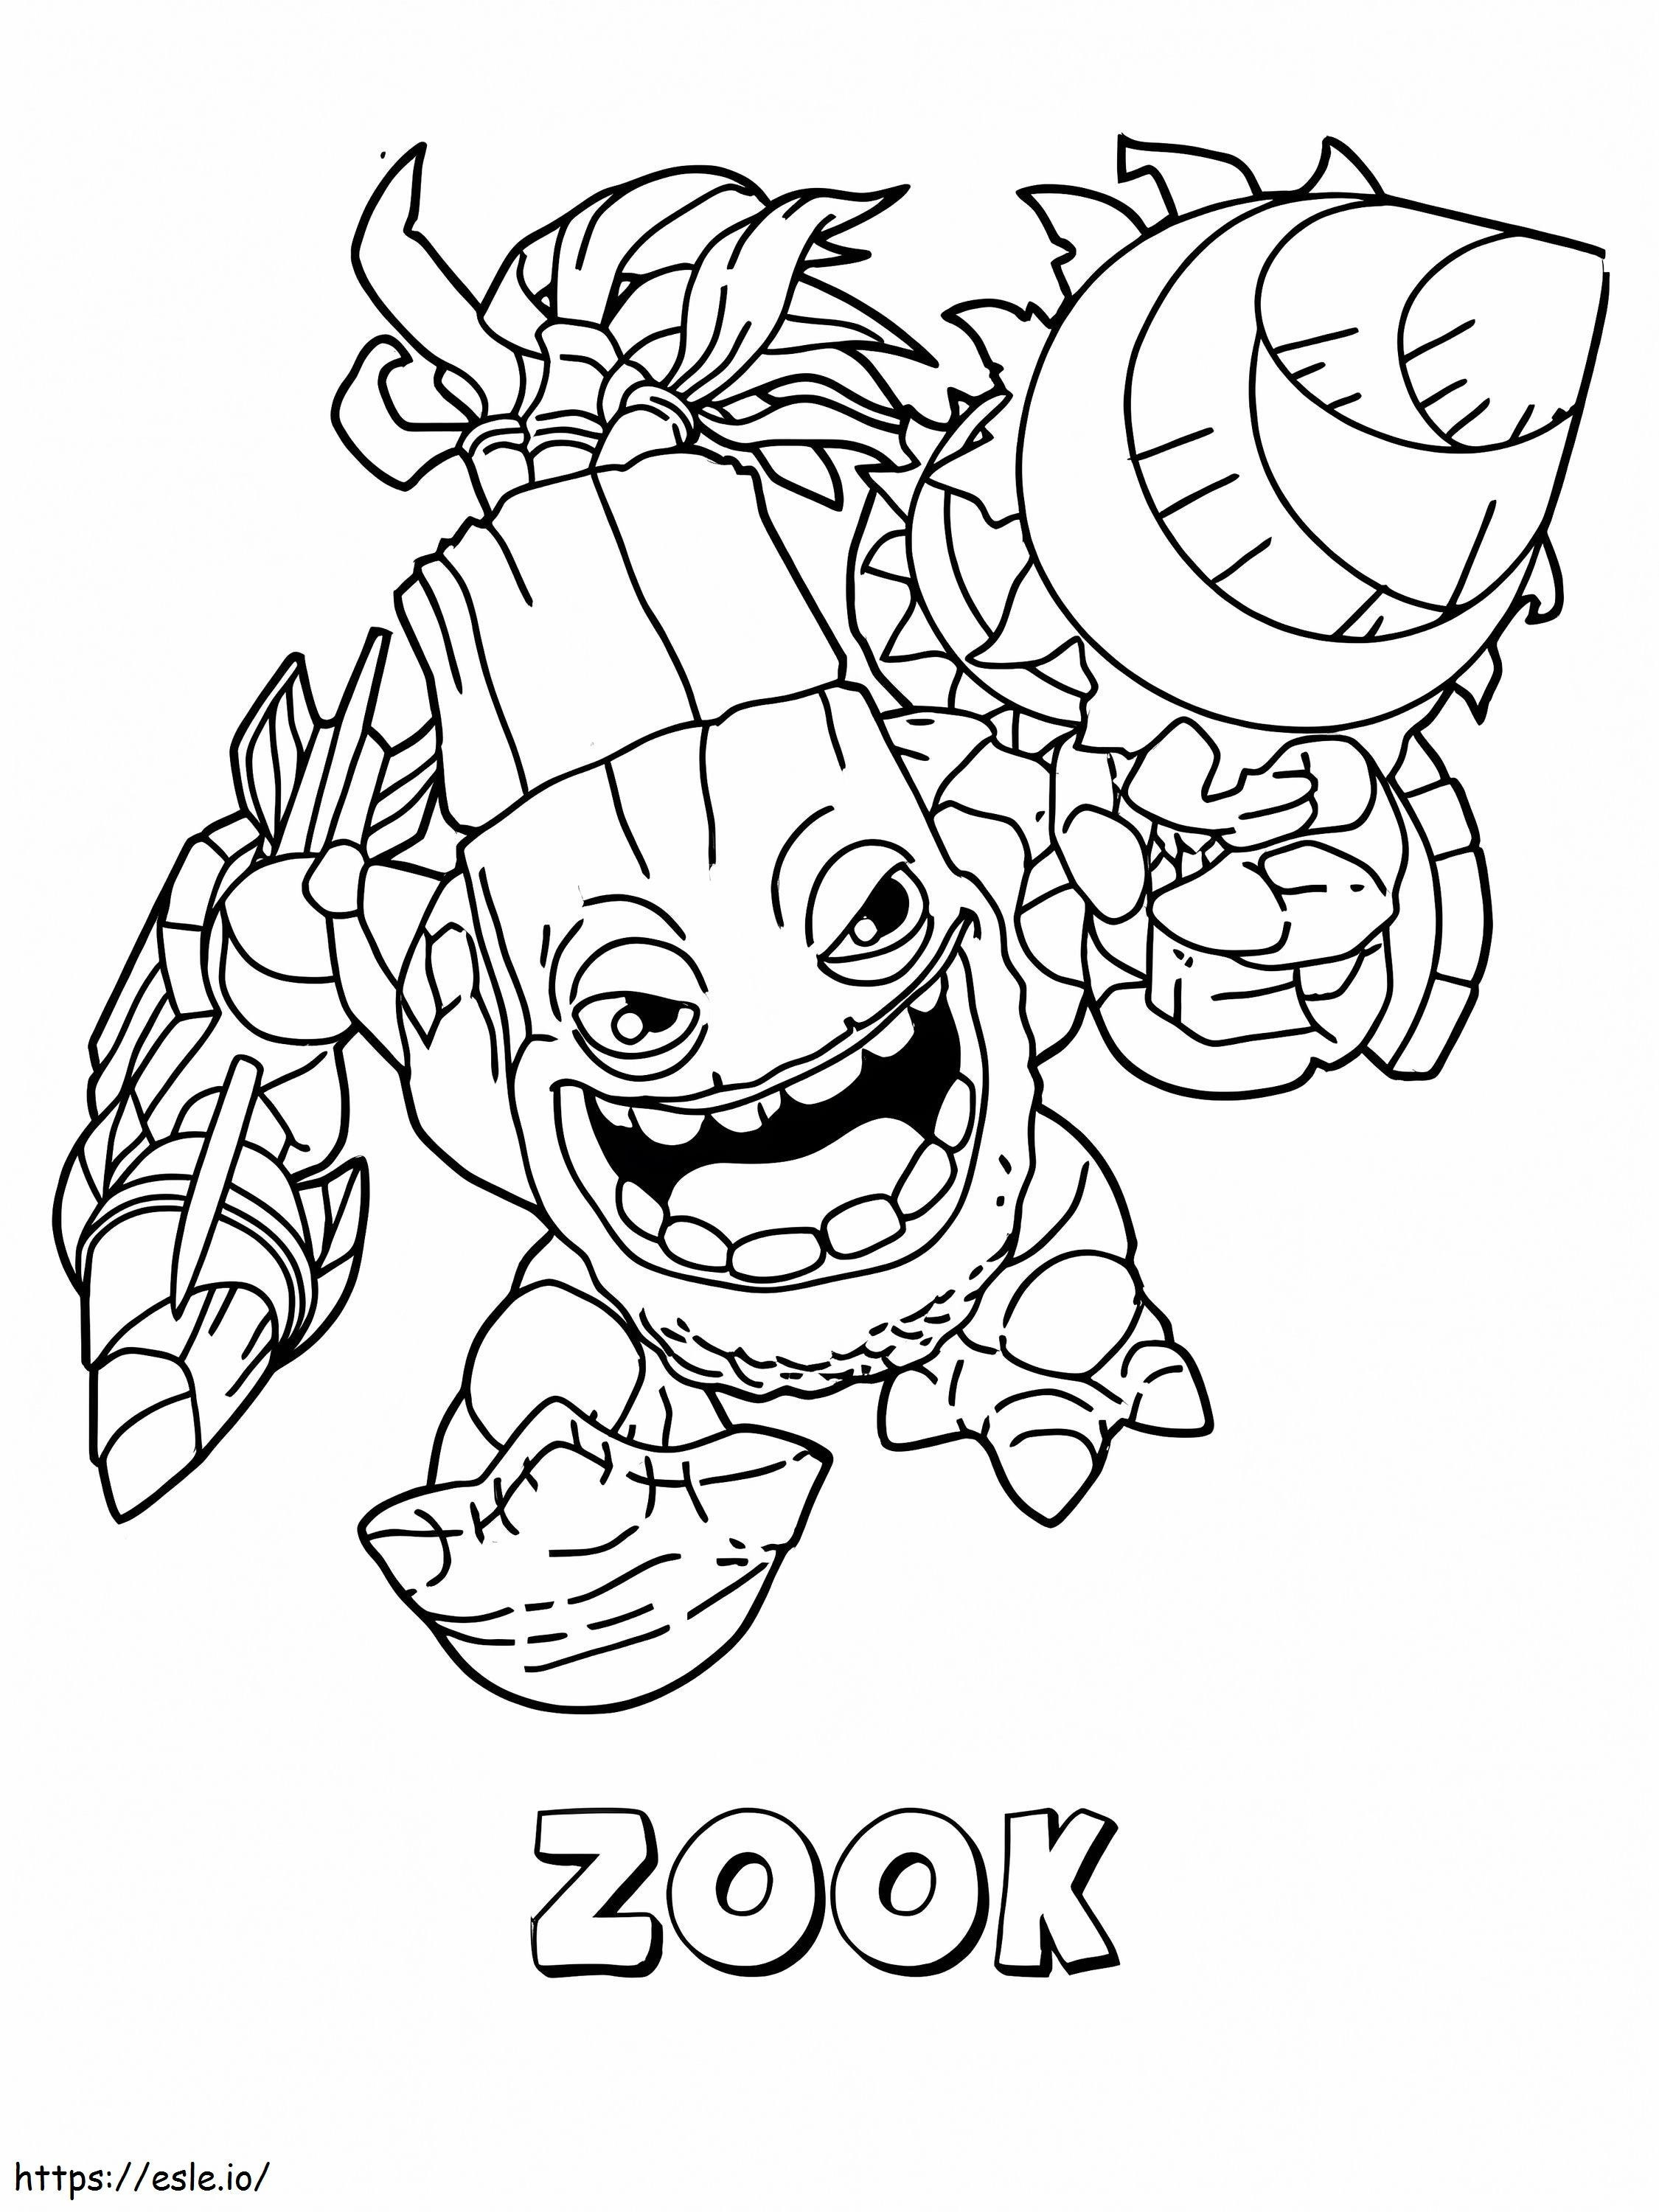 Zook In Skylander Giants coloring page